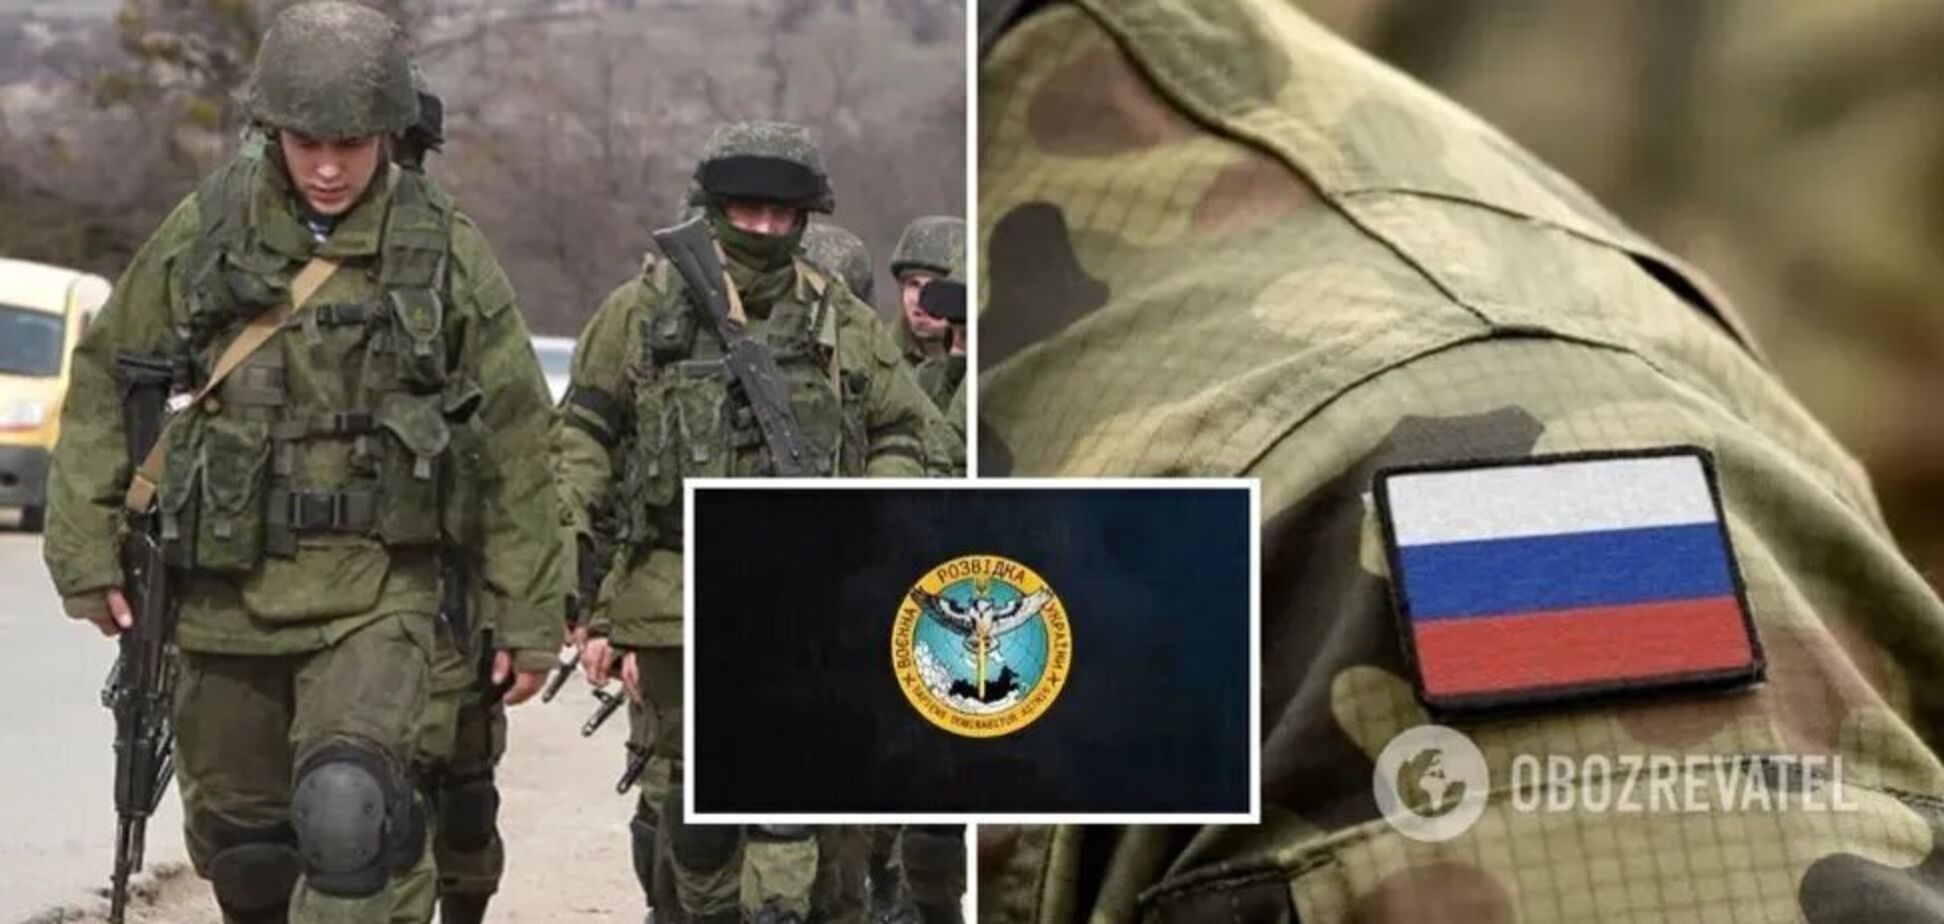 'Чисто на убой посылают': оккупант пожаловался, что в армии РФ солдат не считают людьми. Перехват